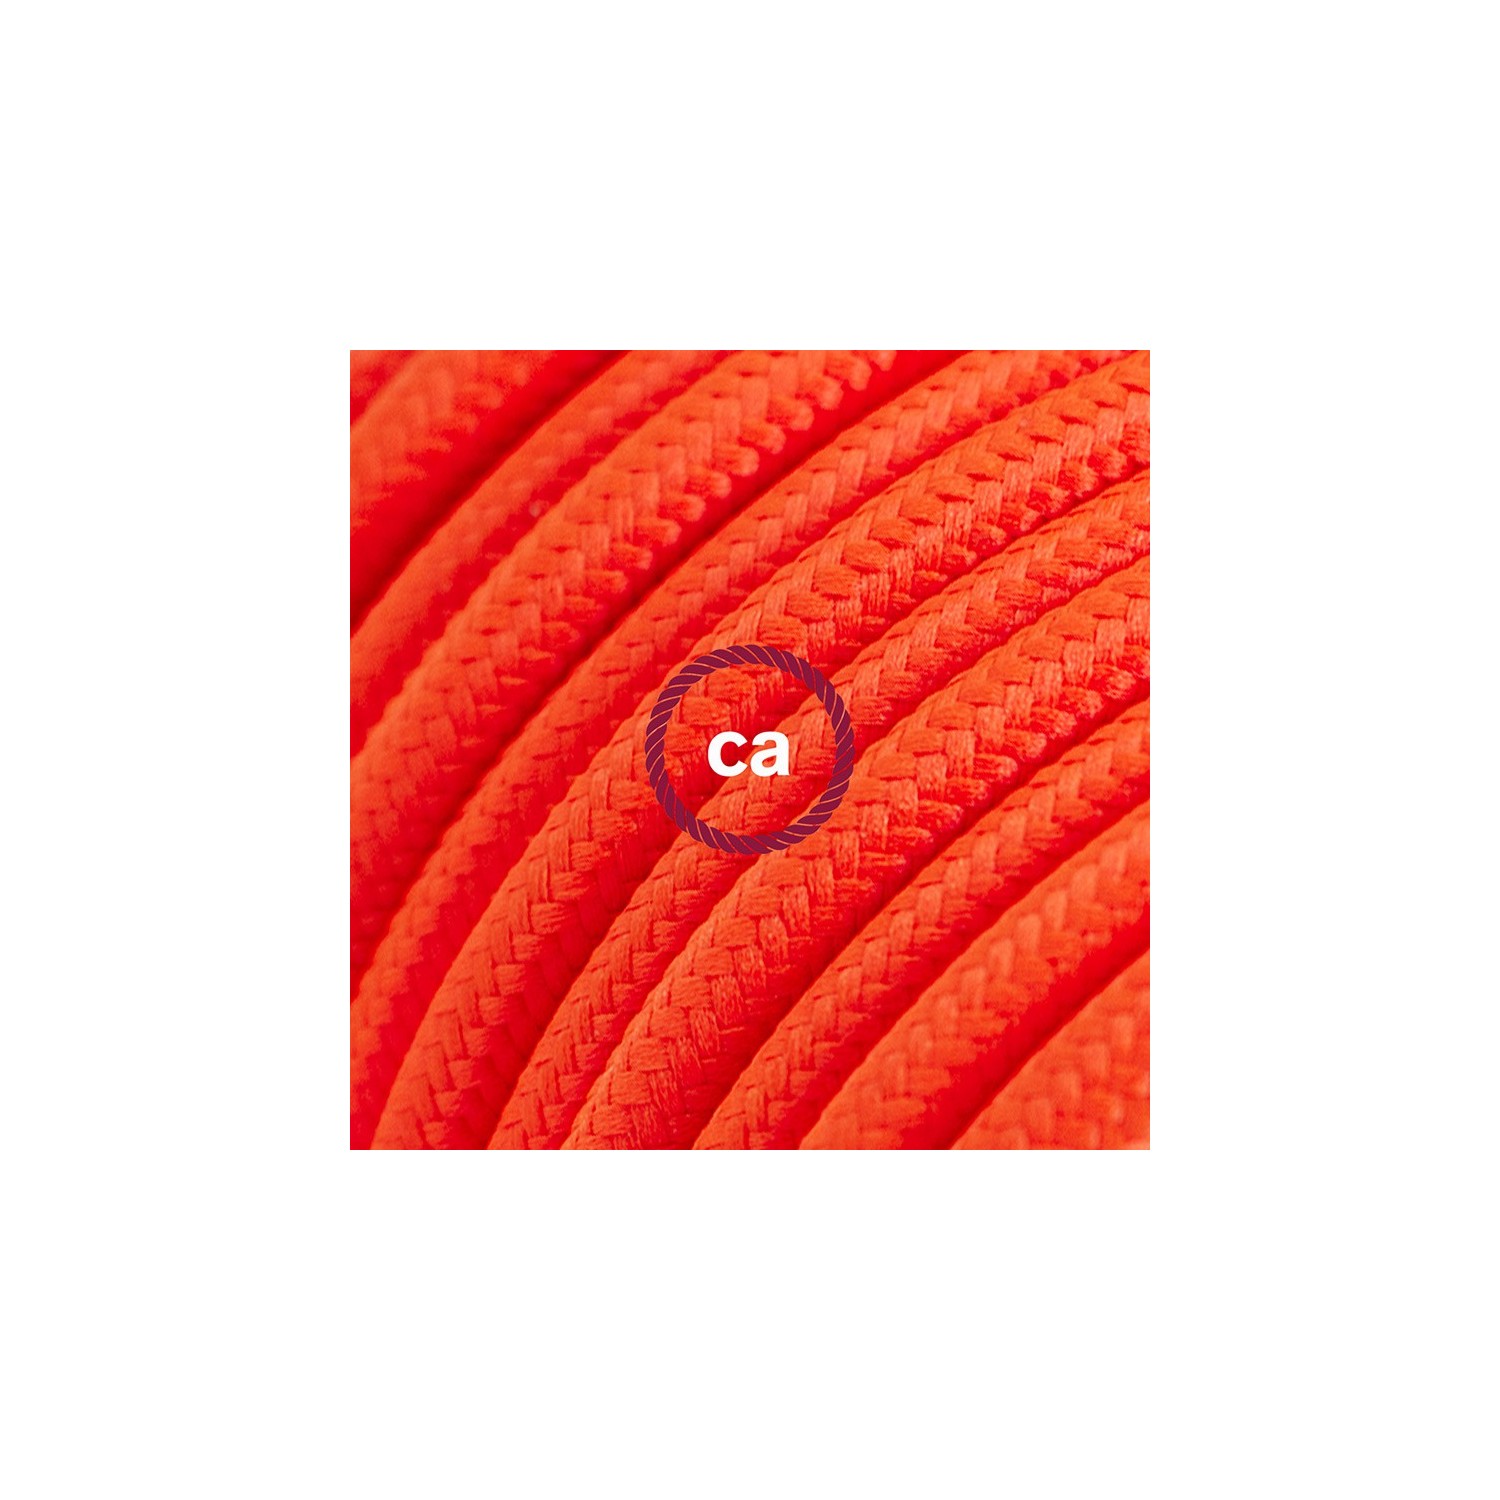 Verlengkabel 2P 10A met rond flexibel strijkijzersnoer RF15 van neon oranje viscose